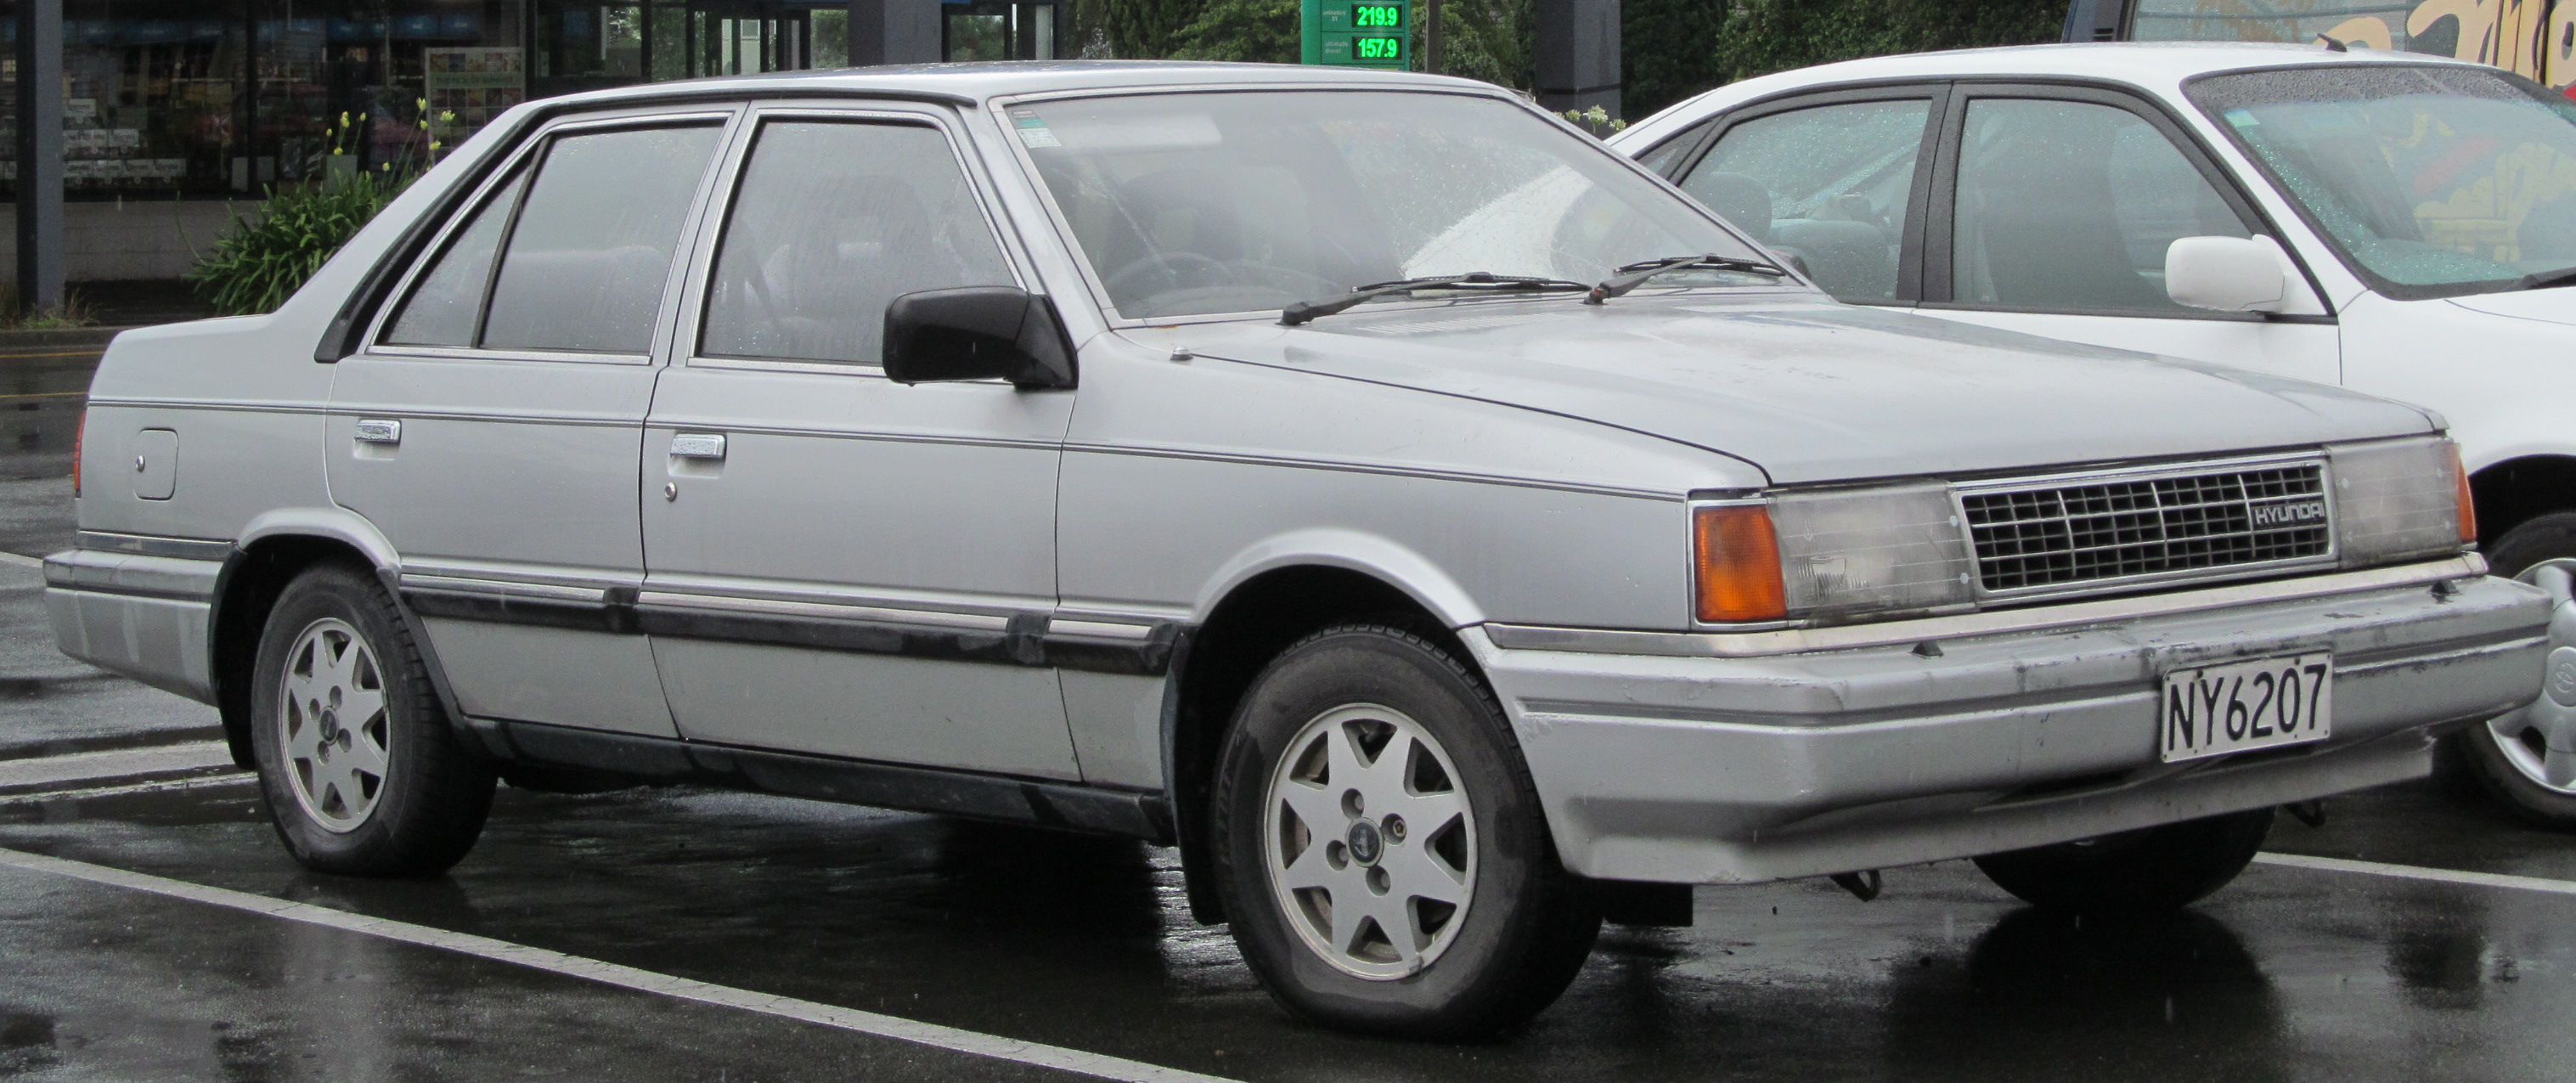 Hyundai ix35 - Wikidata